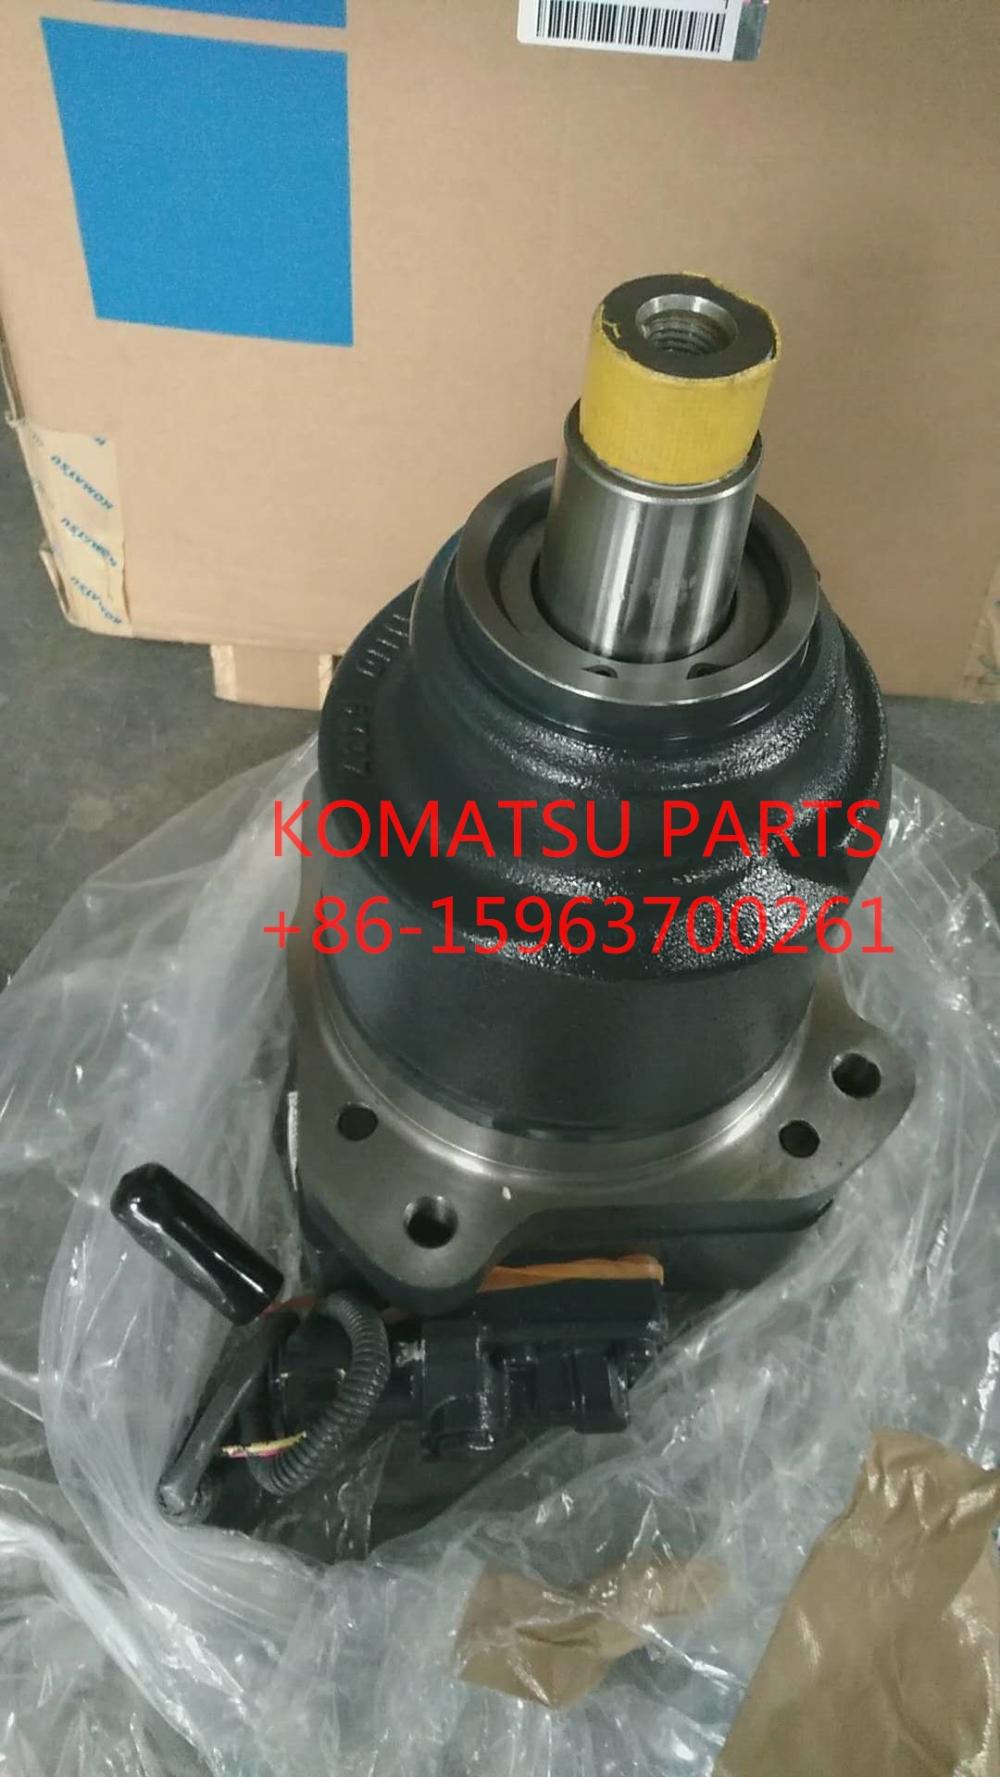 komatsu fan motor 708-7W-00120 for PC600-8